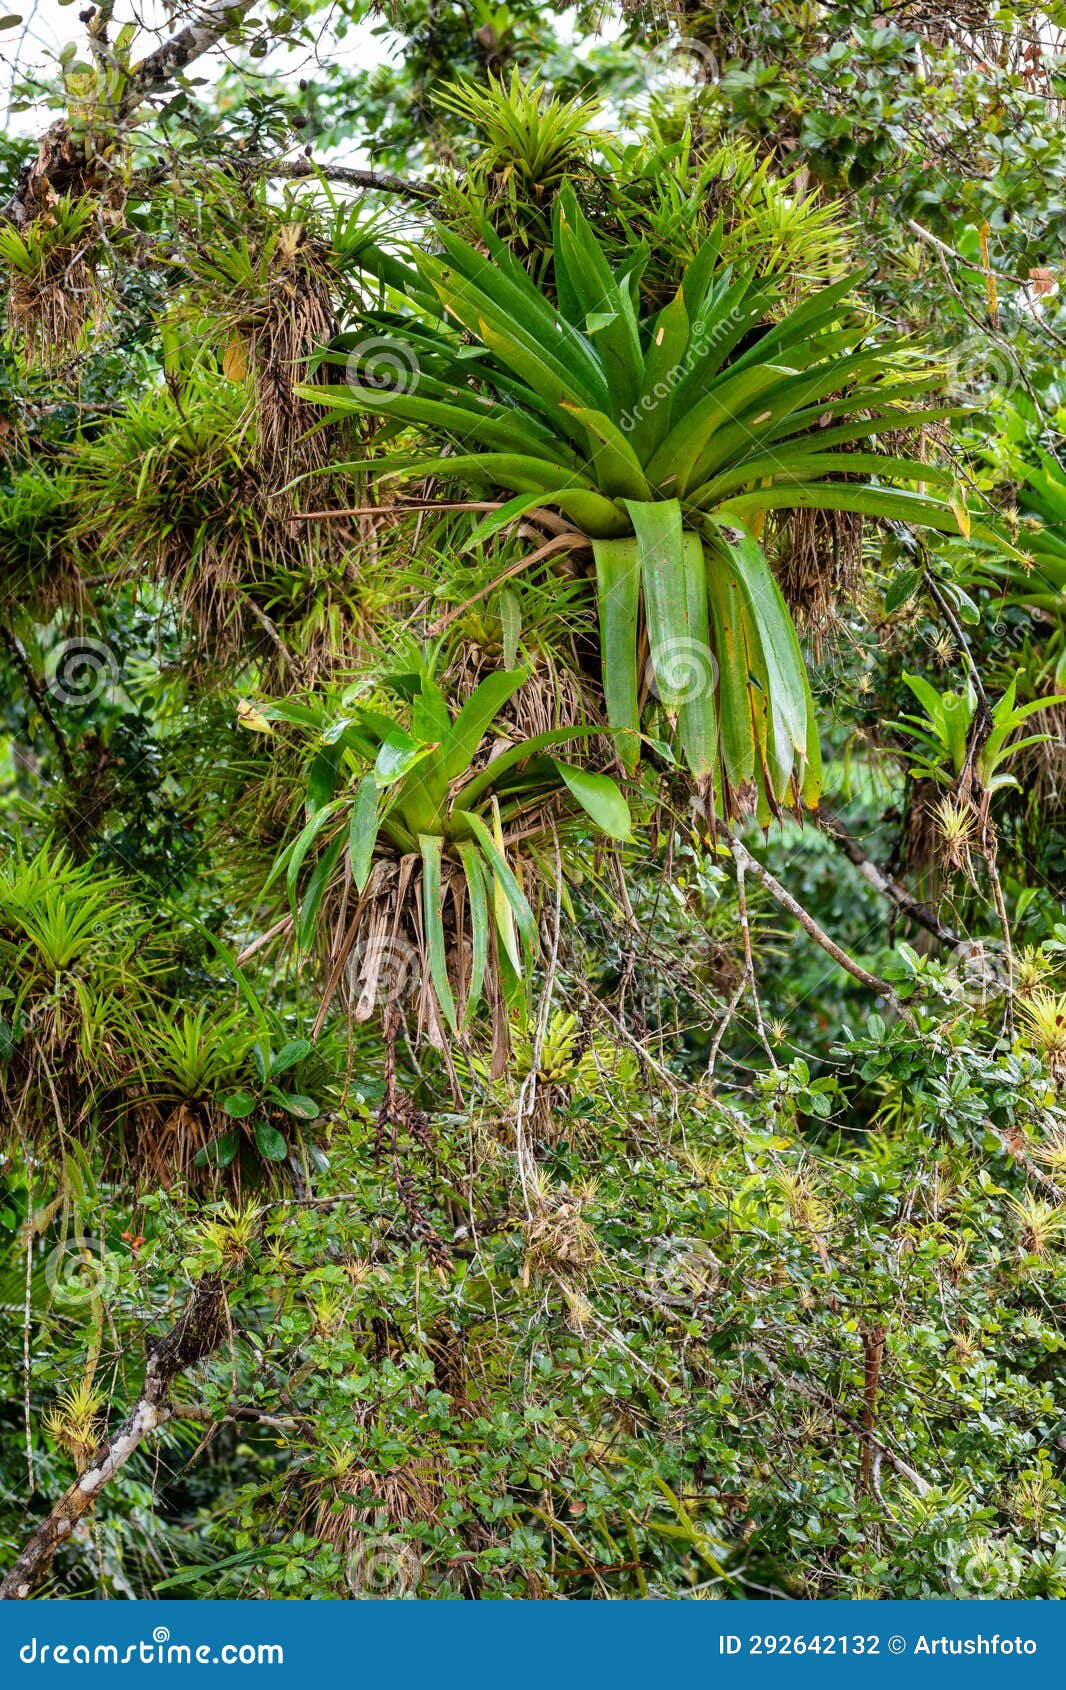 refugio de vida silvestre cano negro rainforest, costa rica wilderness landscape